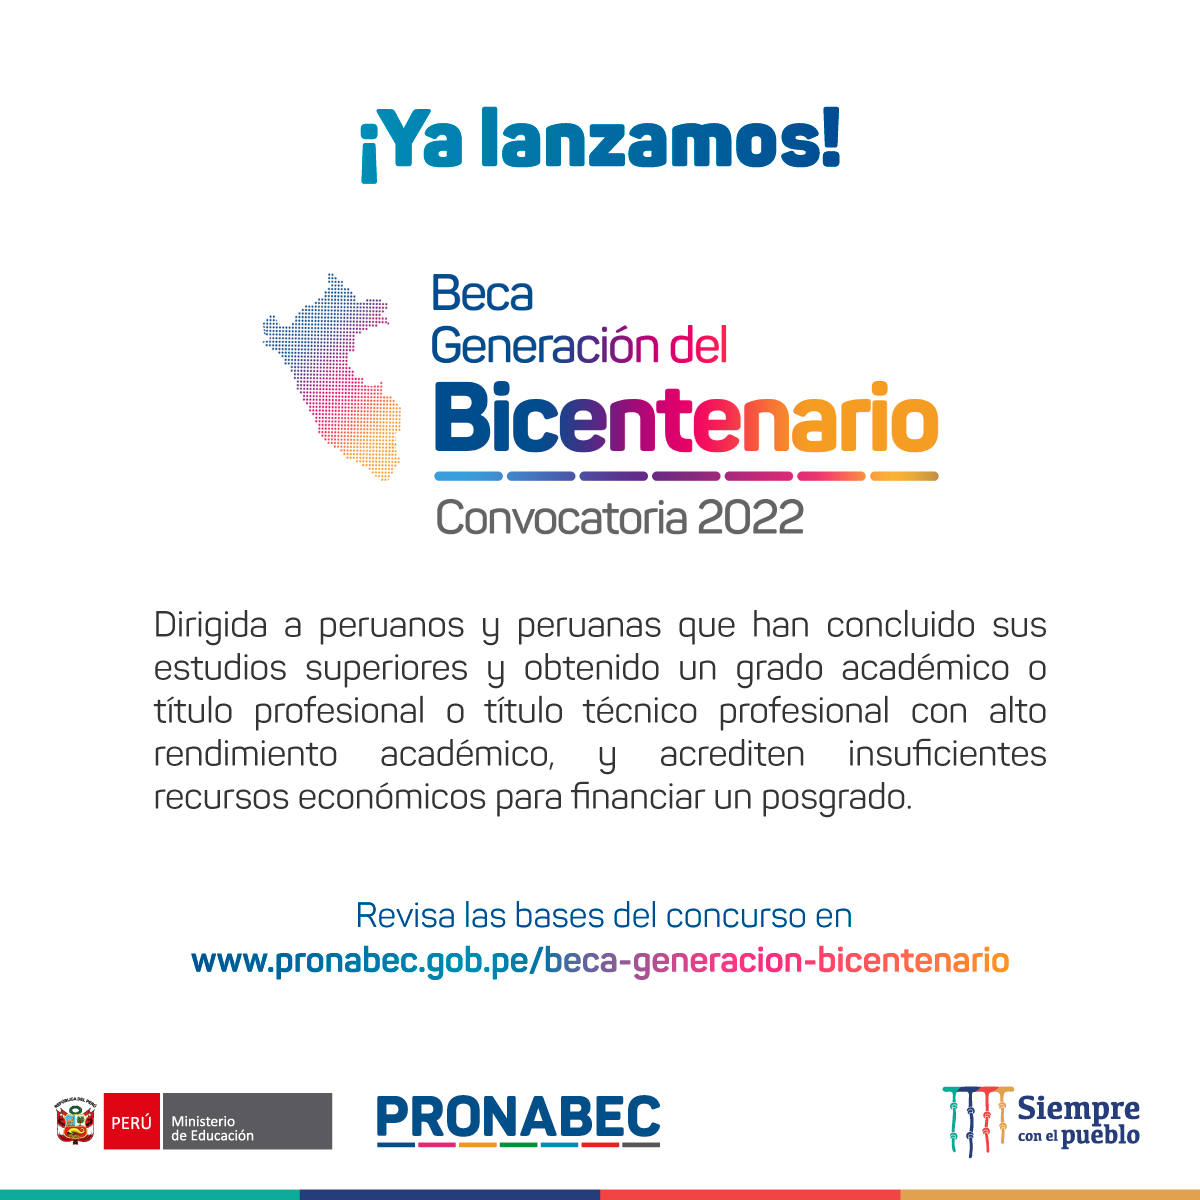 Convocatoria Beca Generación del Bicentenario 2022